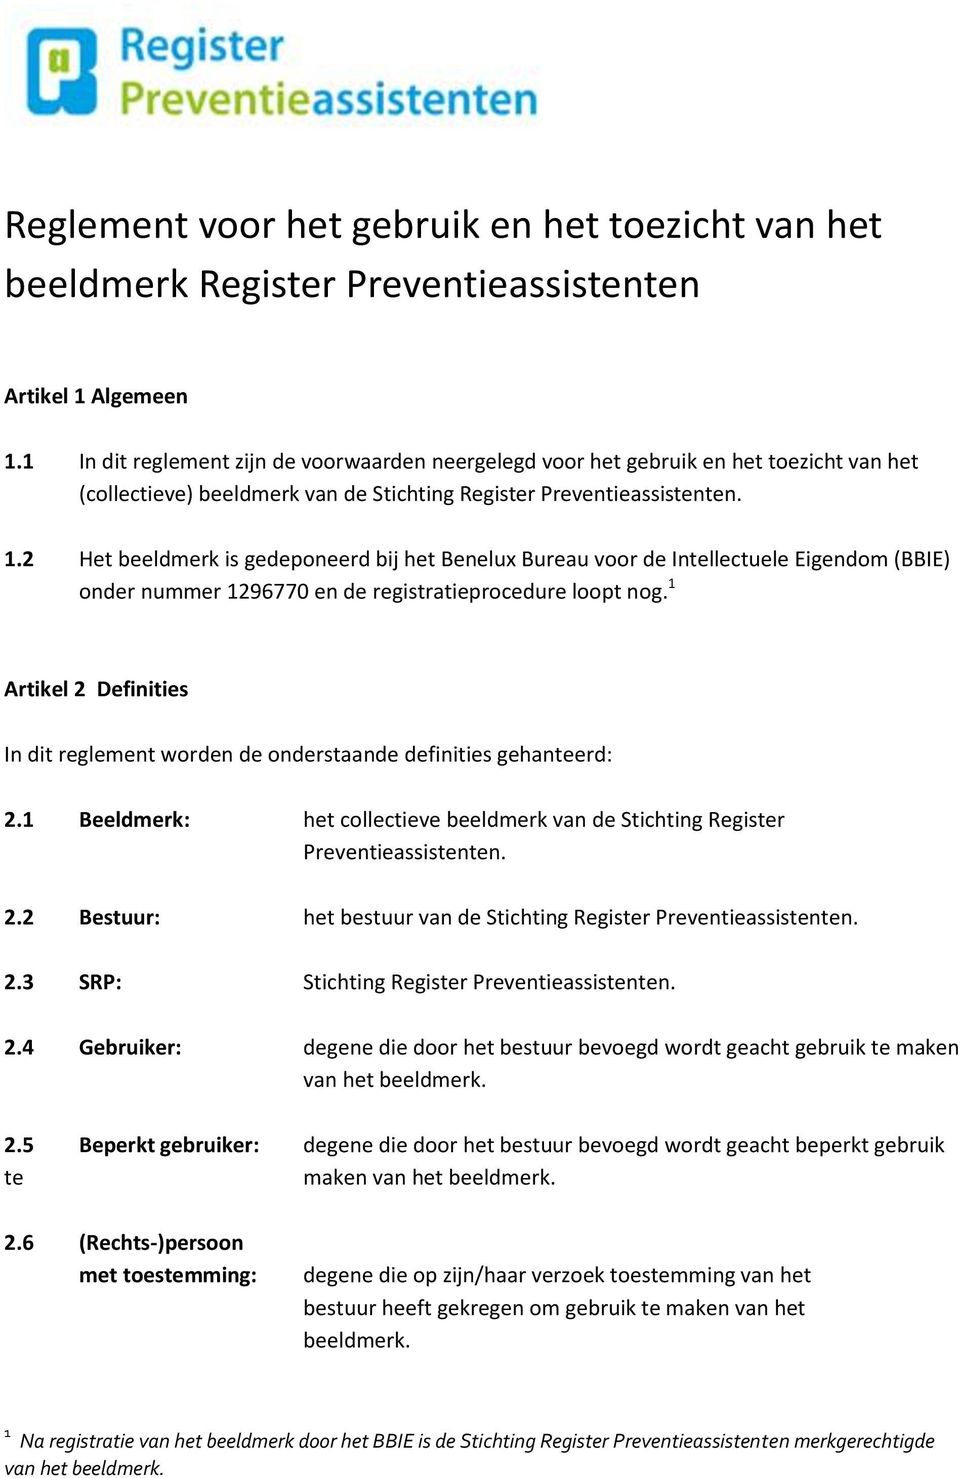 2 Het beeldmerk is gedeponeerd bij het Benelux Bureau voor de Intellectuele Eigendom (BBIE) onder nummer 1296770 en de registratieprocedure loopt nog.